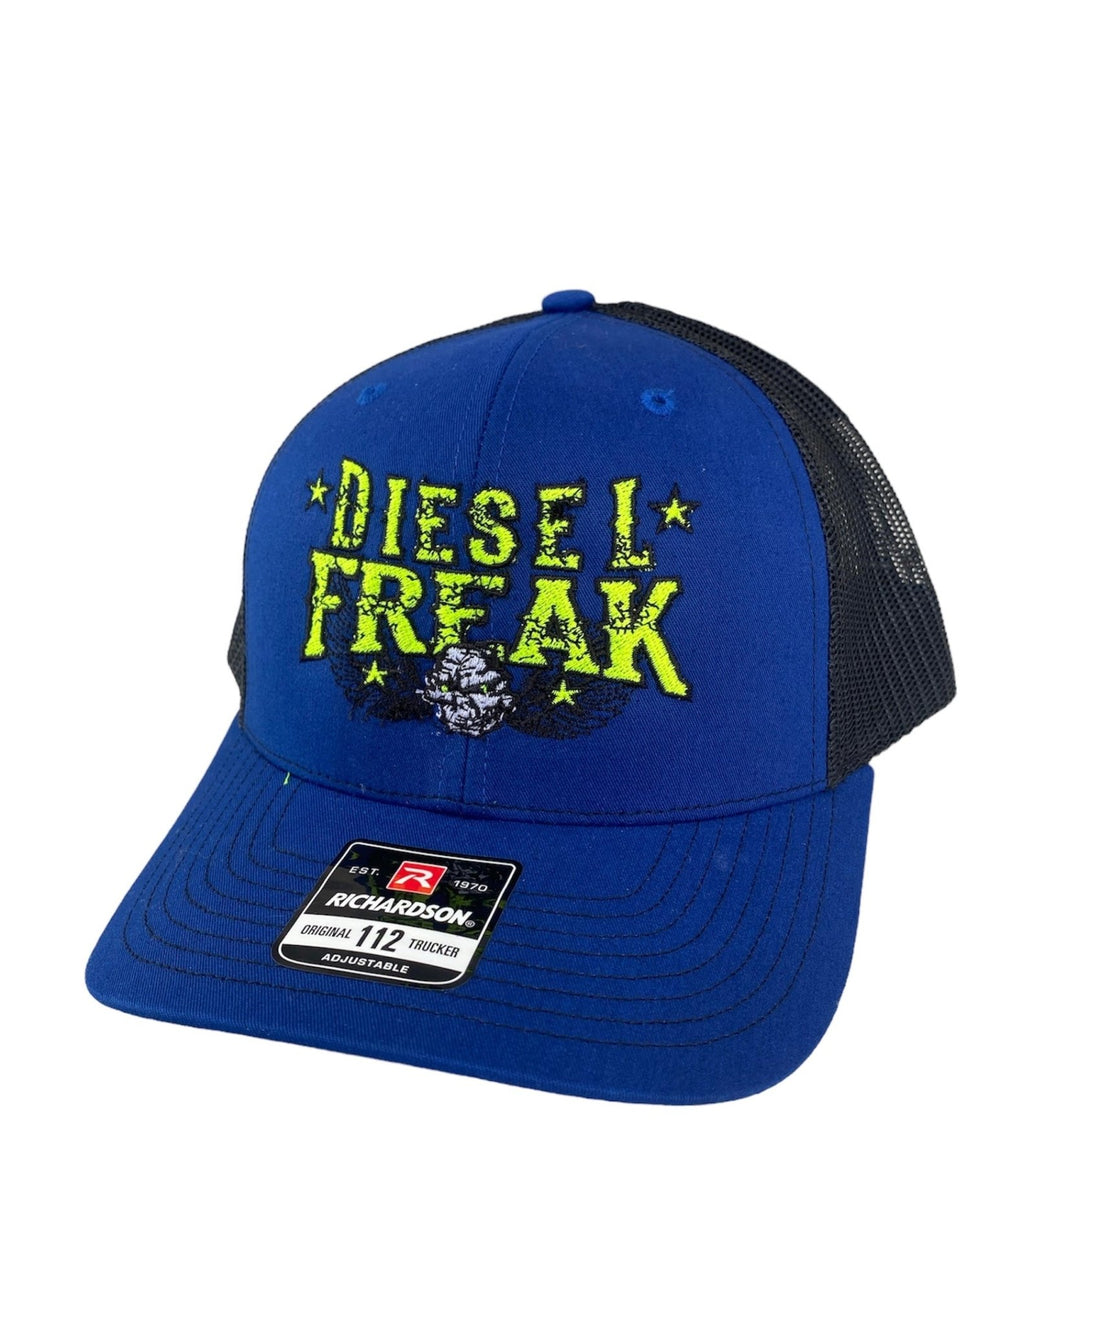 Power and Performance Snapback Hat - Diesel Freak